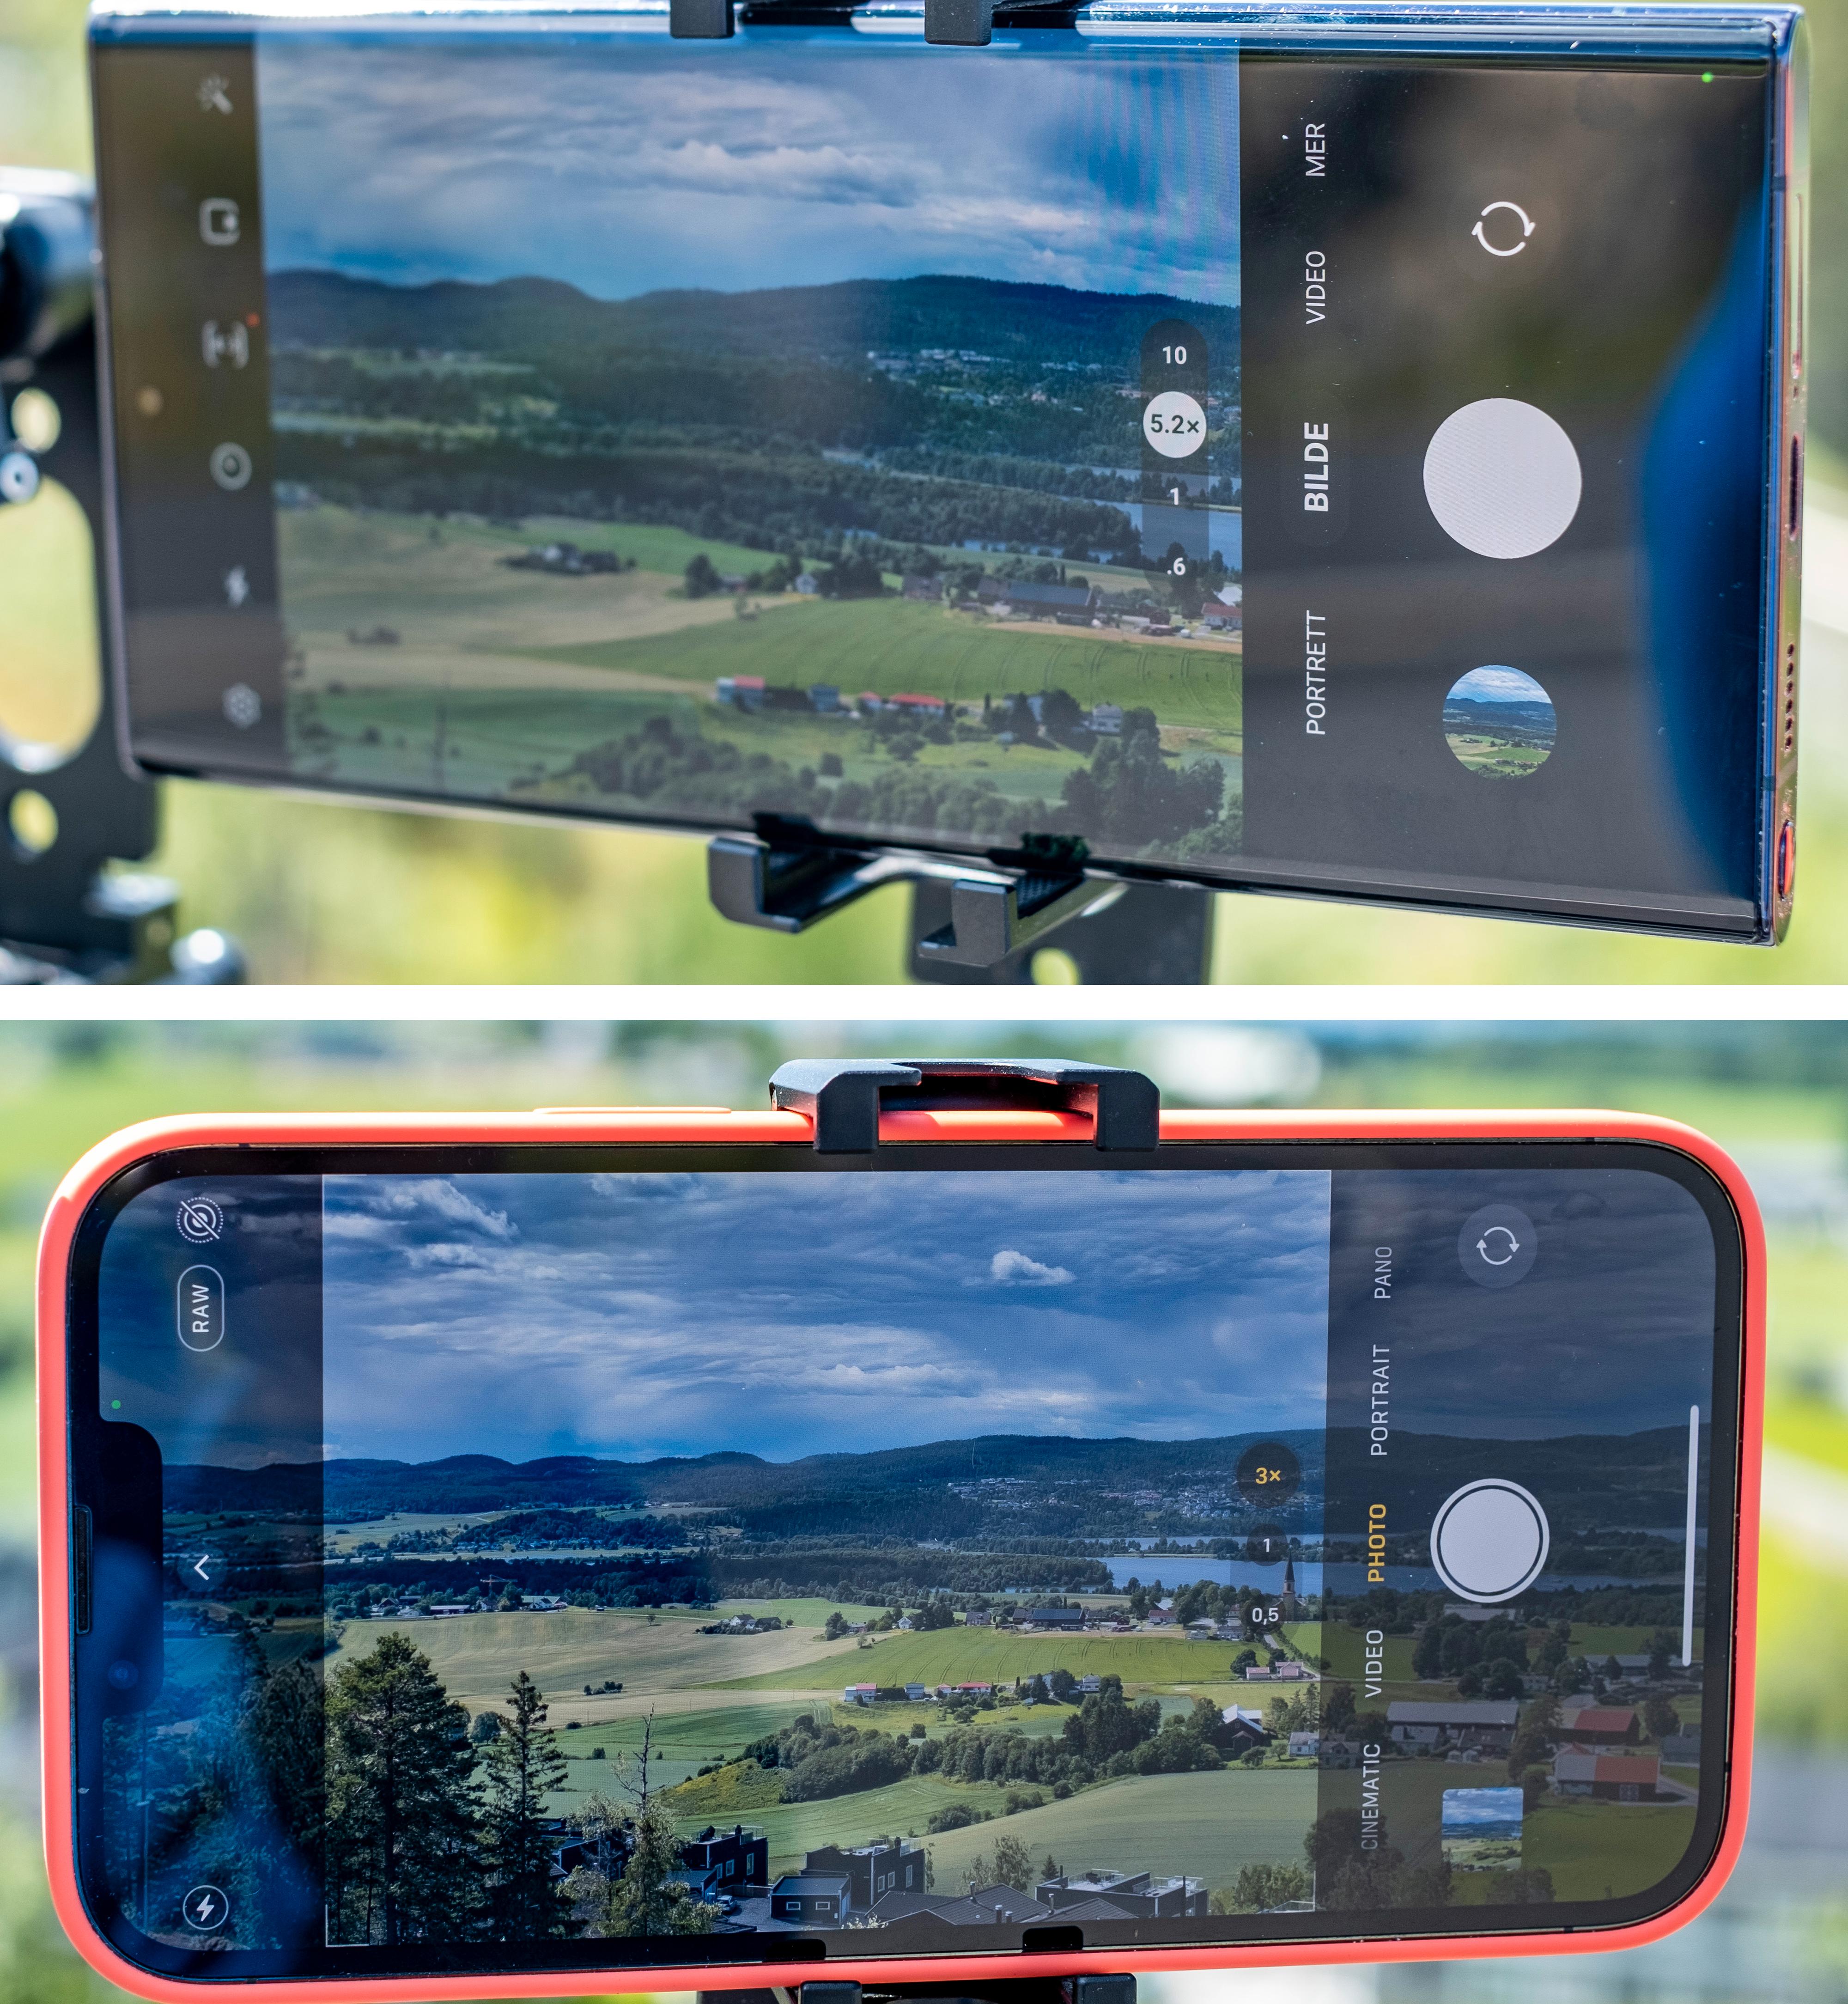 Håpløst uproft? Slik ser fotomenyene ut i henholdsvis Galaxy S22 Ultra og iPhone 13 Pro Max. Det er mulig å «gjøre det komplisert» å ta bilder med disse telefonene også, men da er det et aktivt valg. Hvert eneste bilde er litt kronglete med Xperia 1 IV - enten du vil eller ikke.